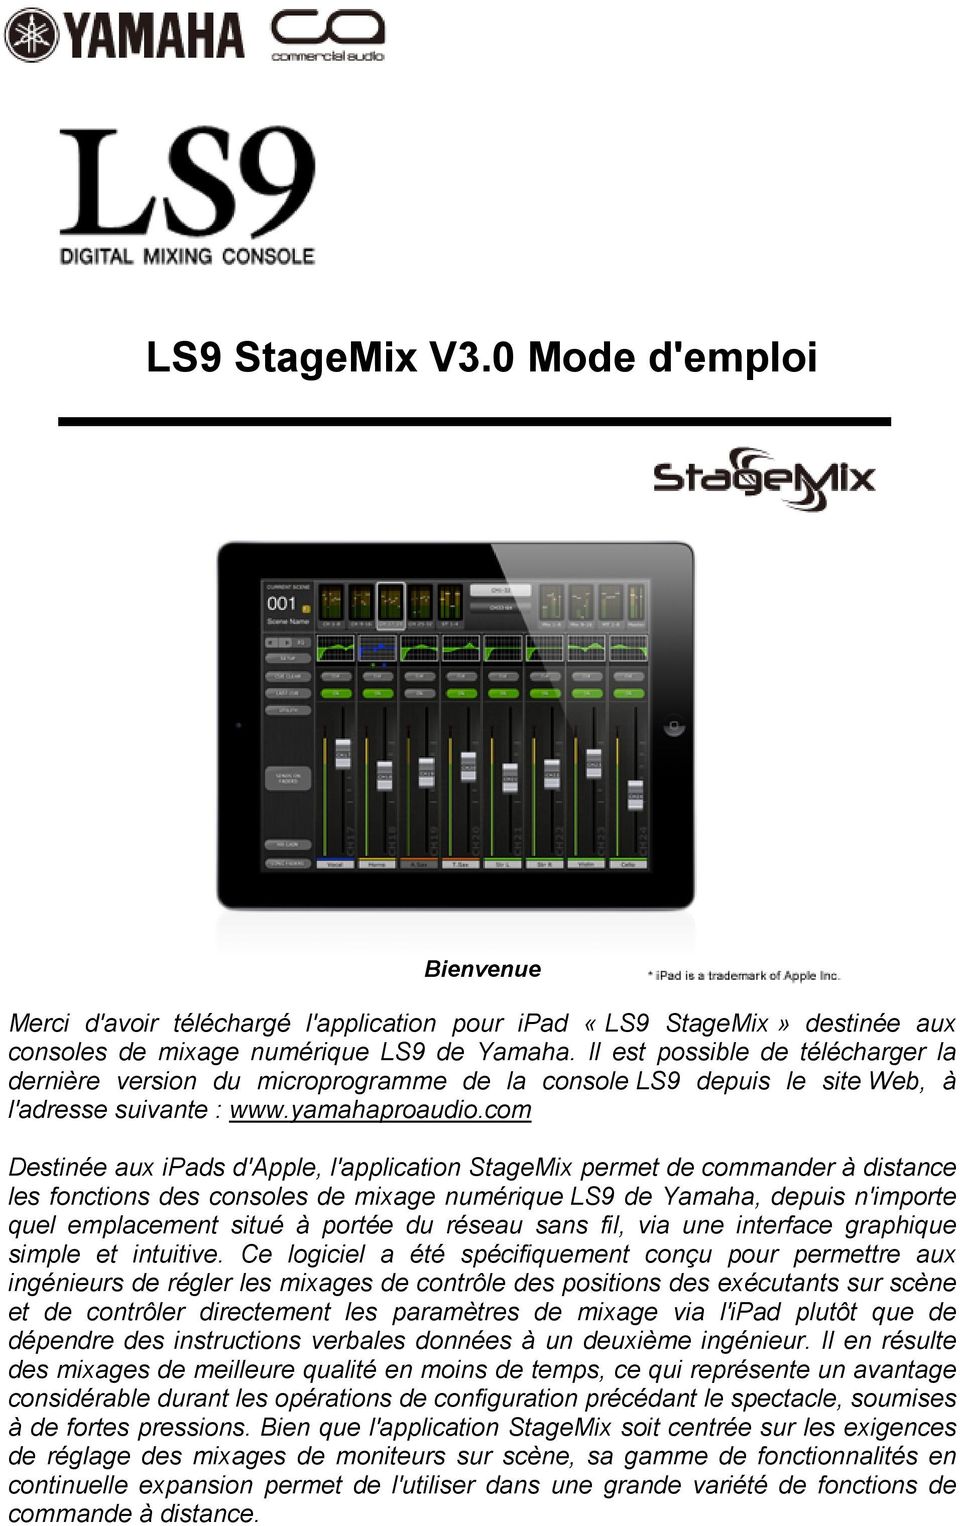 com Destinée aux ipads d'apple, l'application StageMix permet de commander à distance les fonctions des consoles de mixage numérique LS9 de Yamaha, depuis n'importe quel emplacement situé à portée du